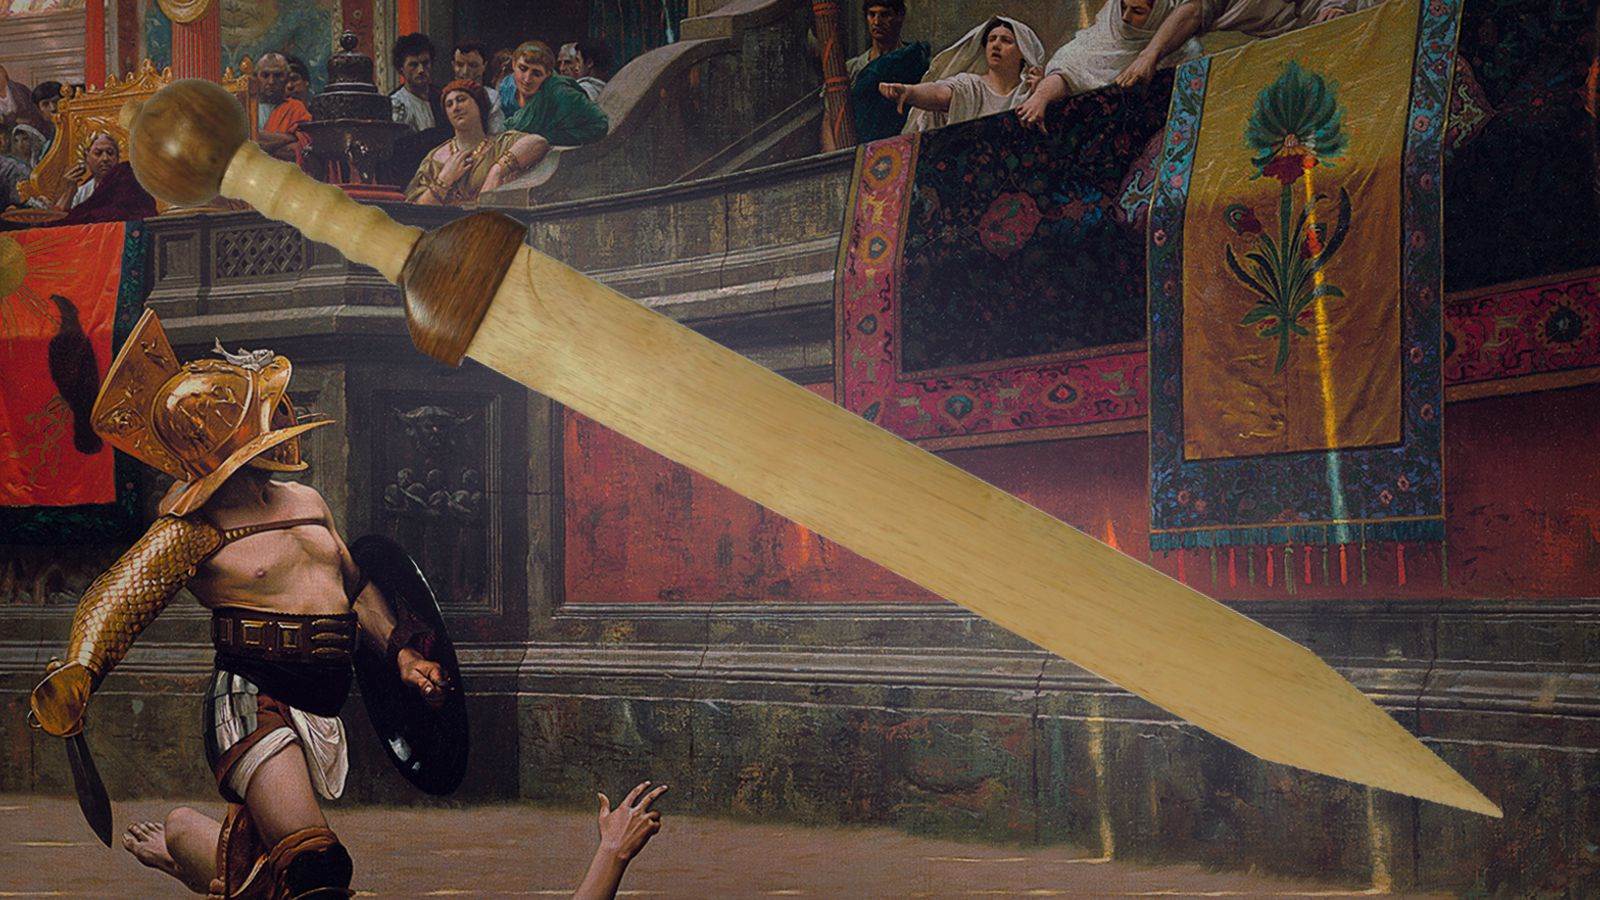 The Roman Rudis - Sword of Freedom